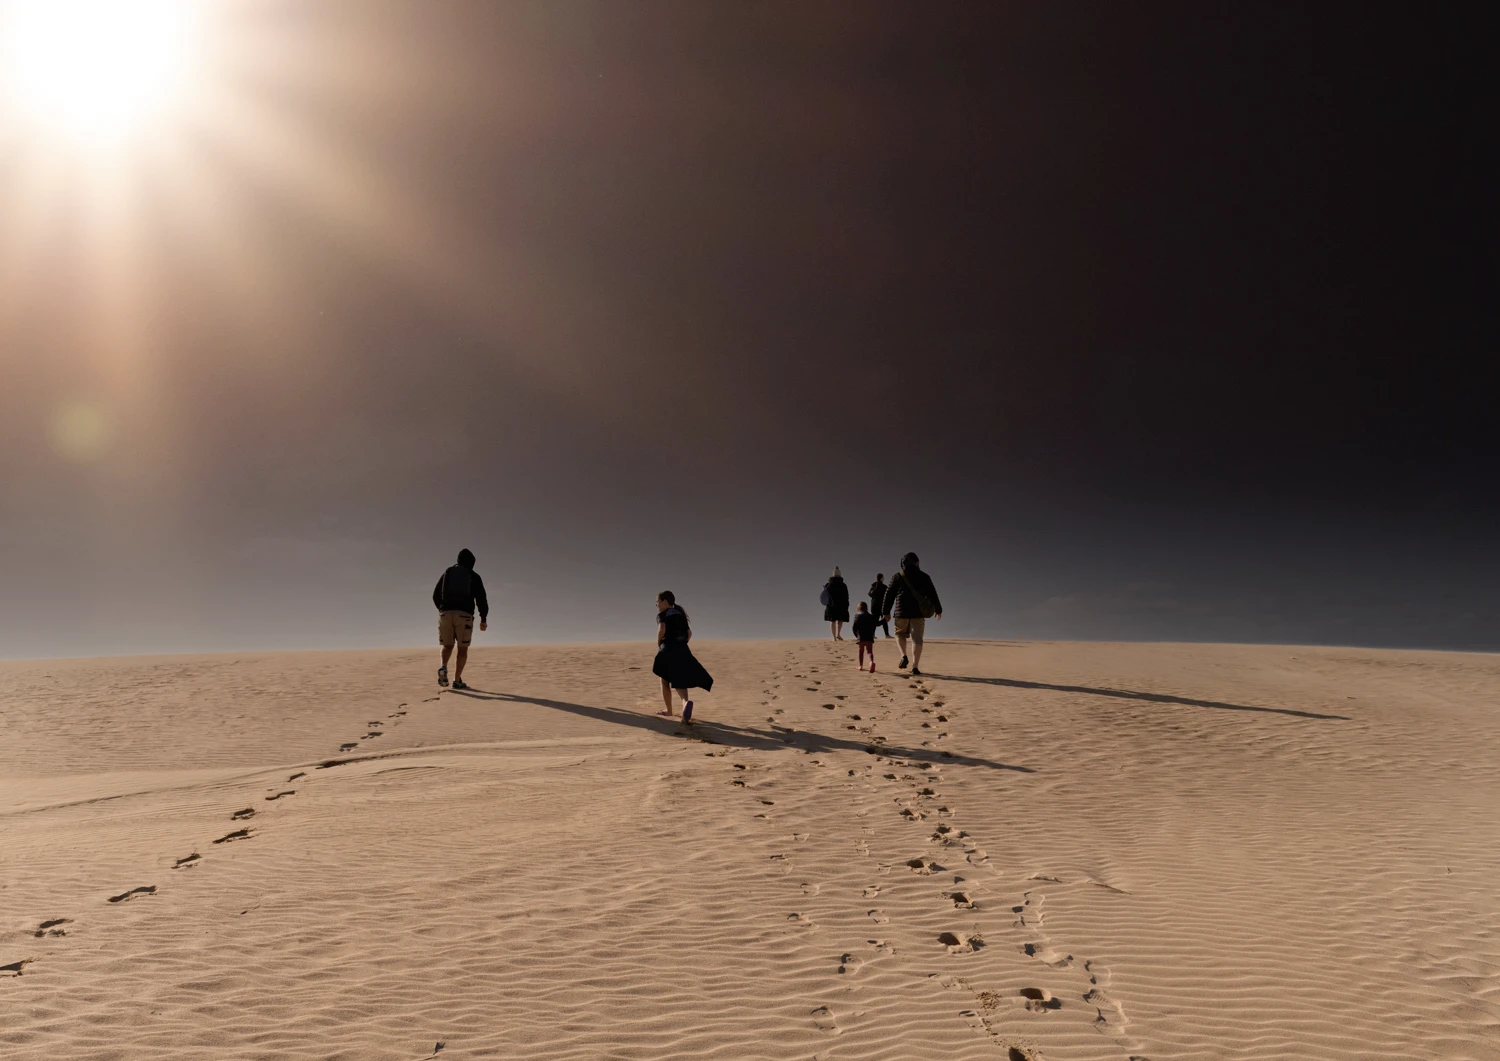 Walking over sand dunes